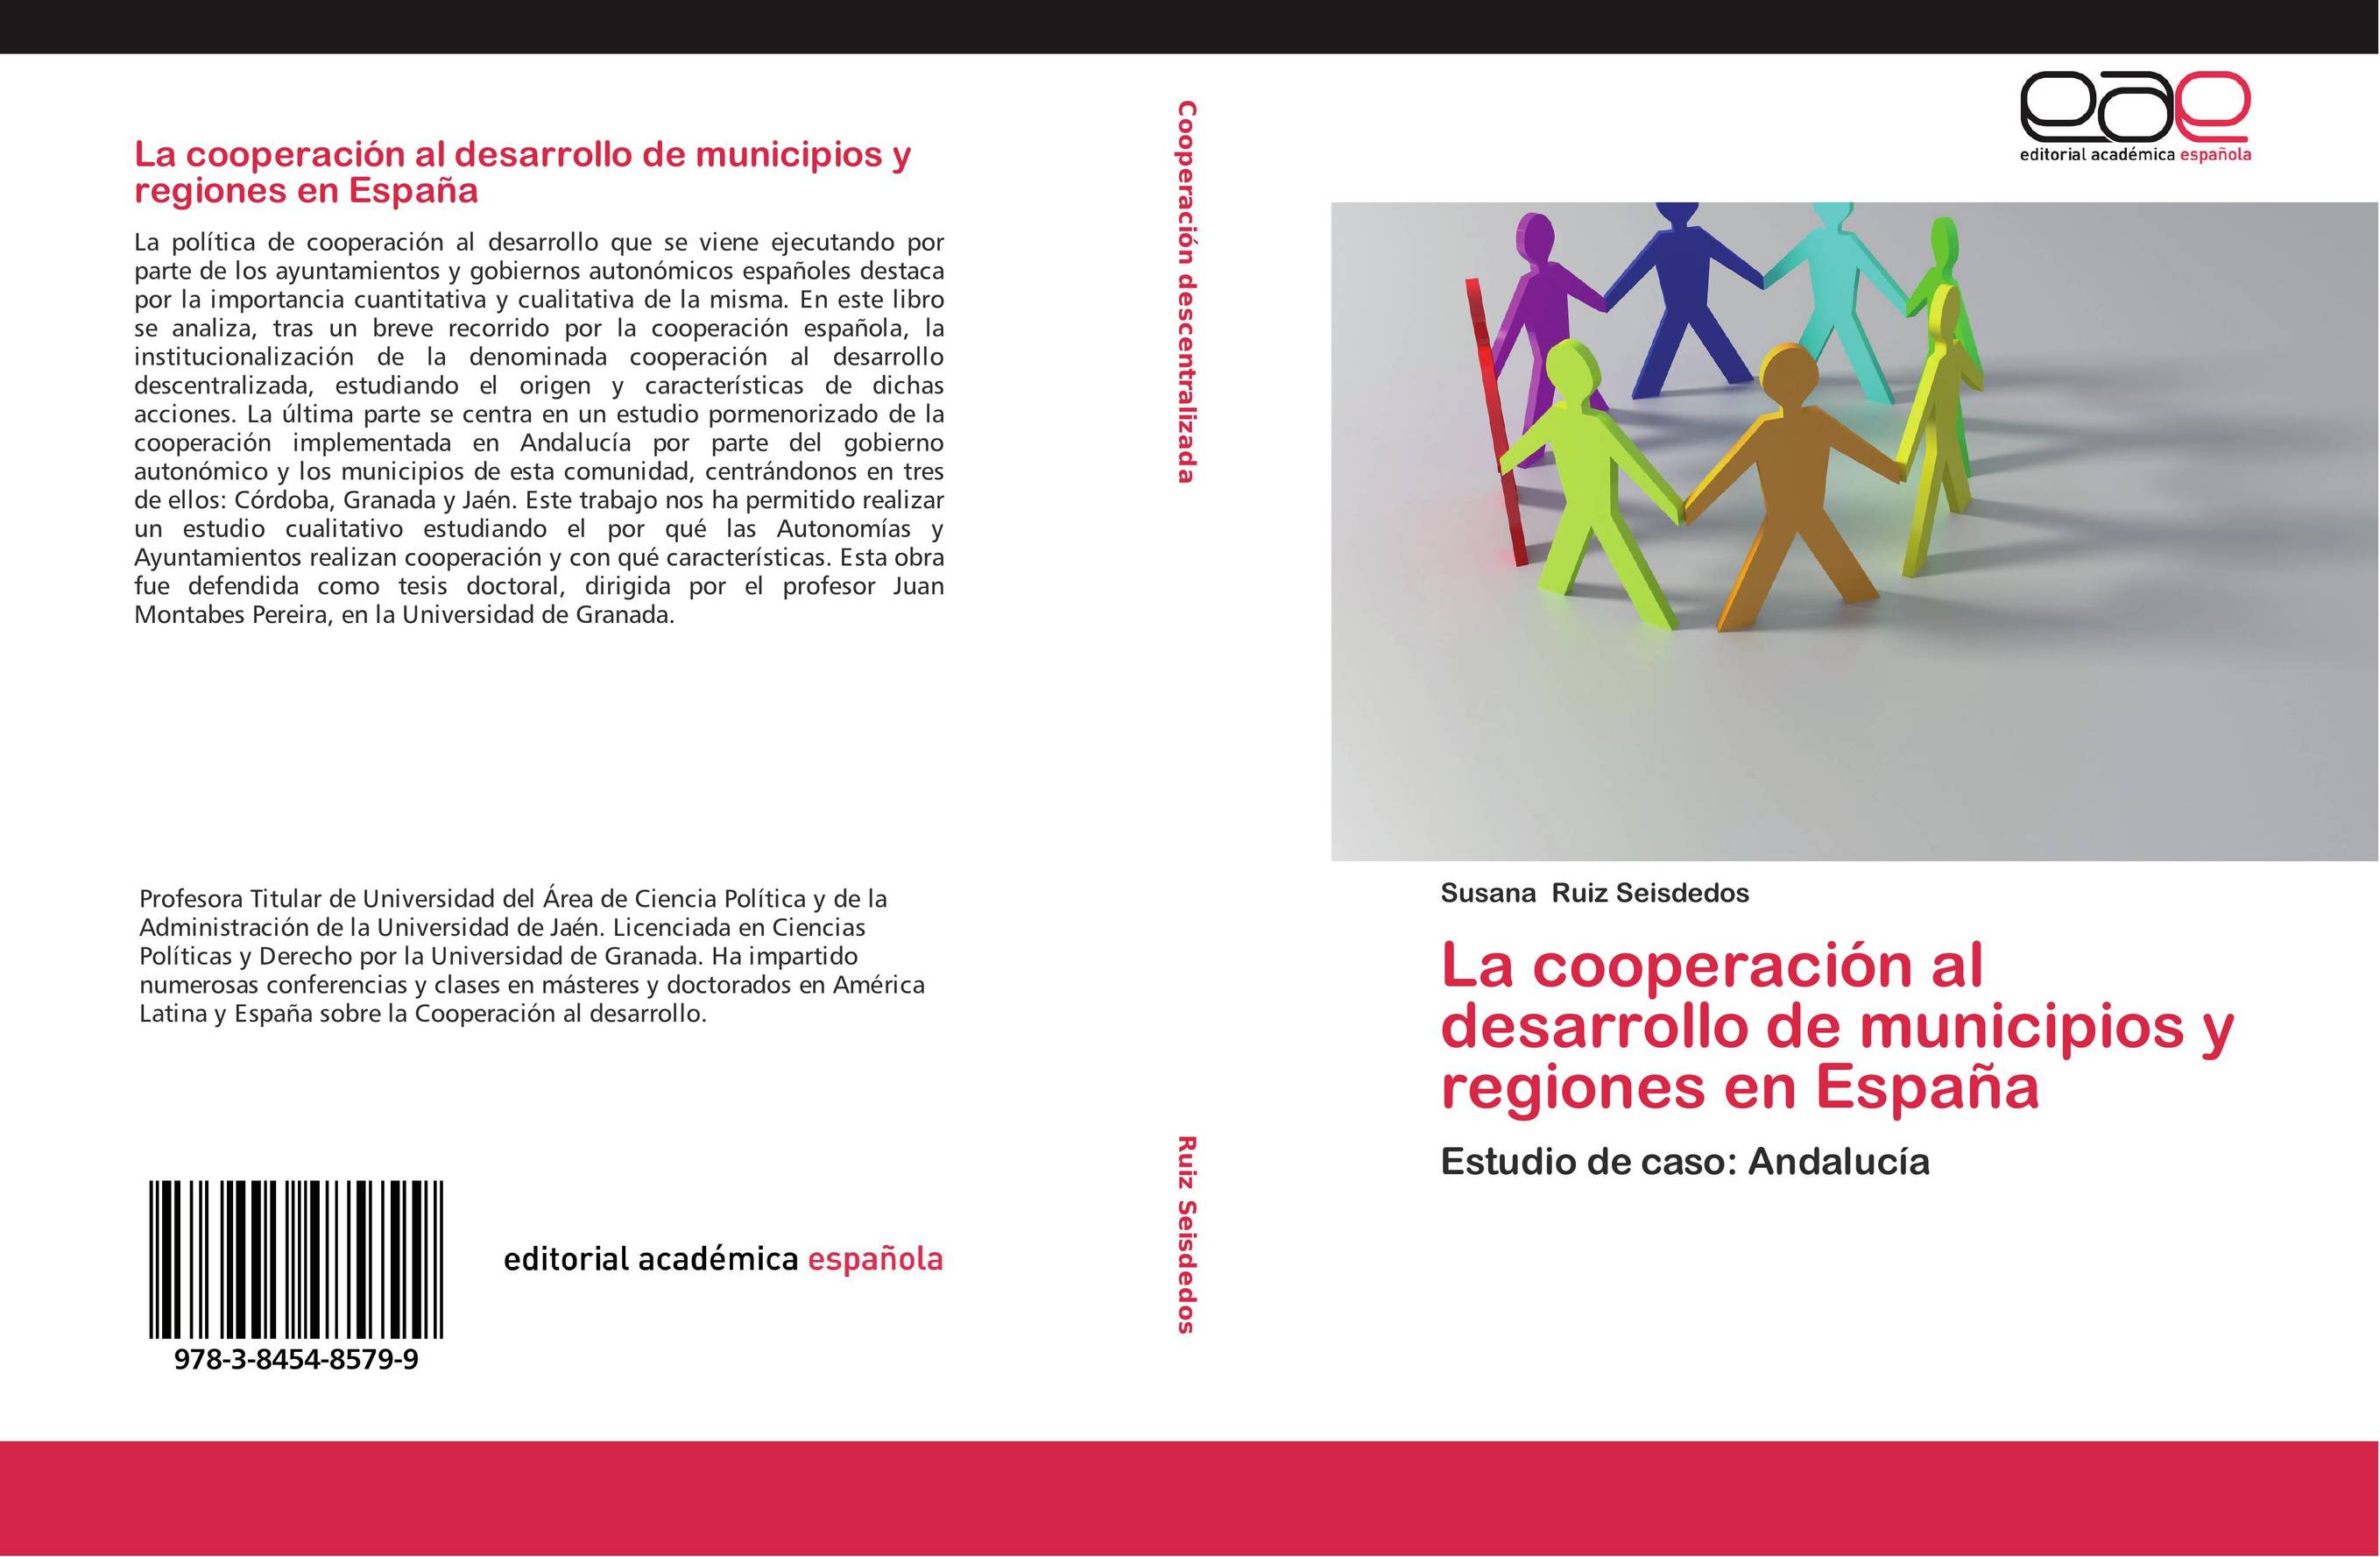 La cooperación al desarrollo de municipios y regiones en España